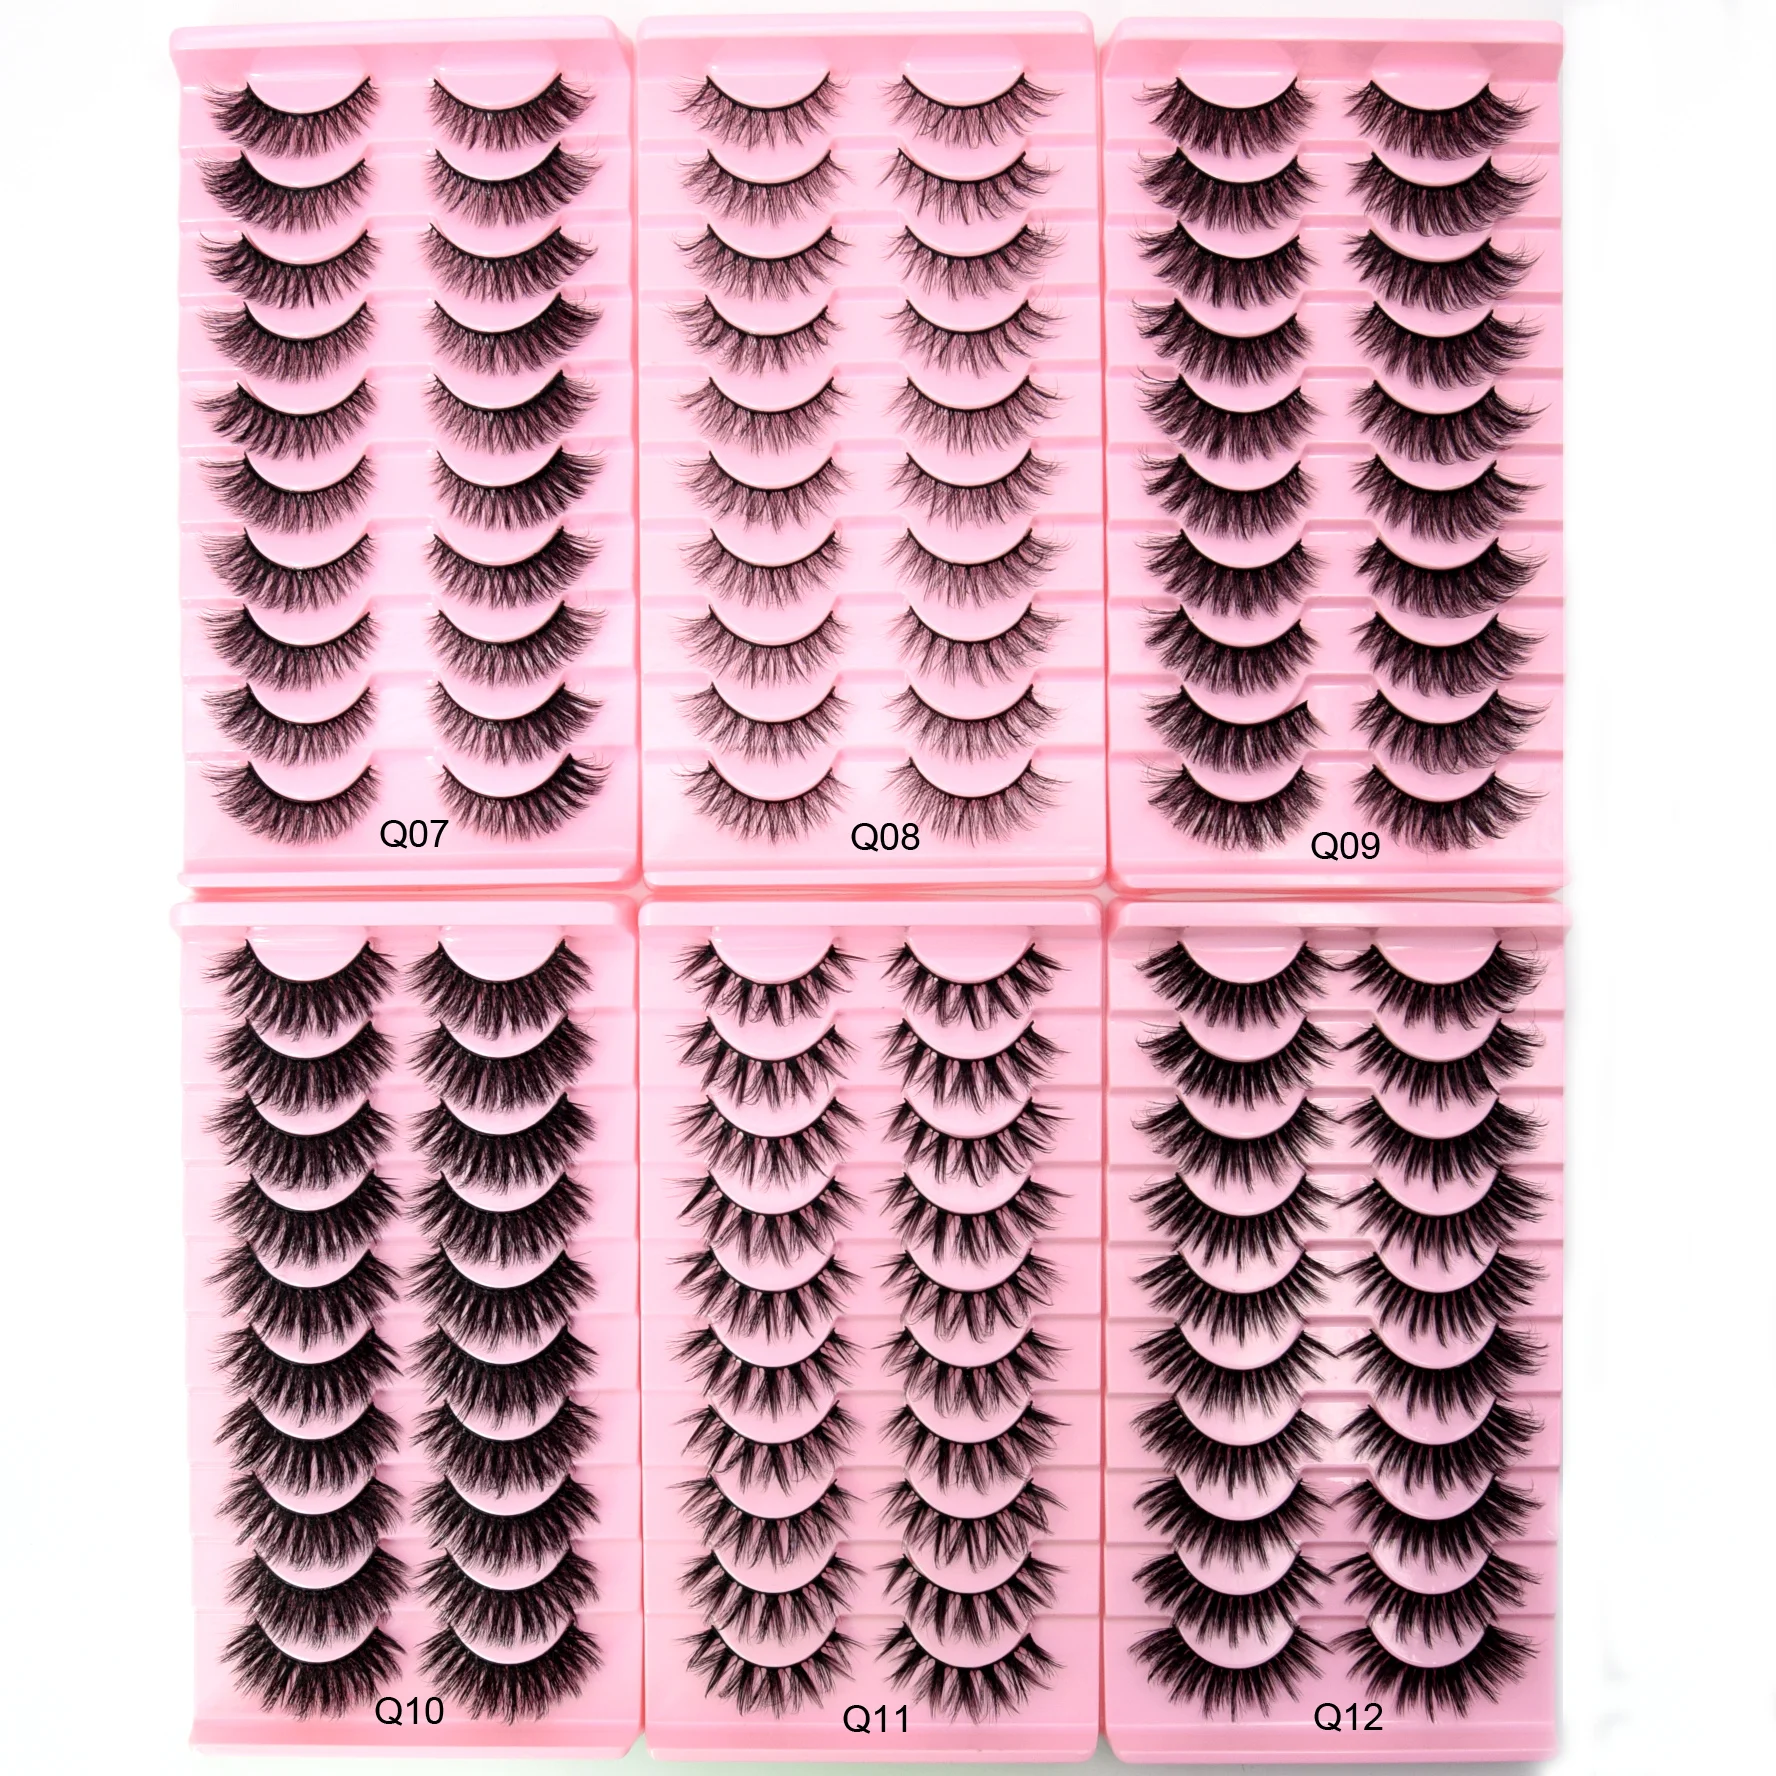 10 Pairs Eyelashes Natural Long 3D Mink Lashes Fluffy Volume Mink False Eyelashes Cruelty Free Wispy Lashes Makeup Cilios Q01 images - 6